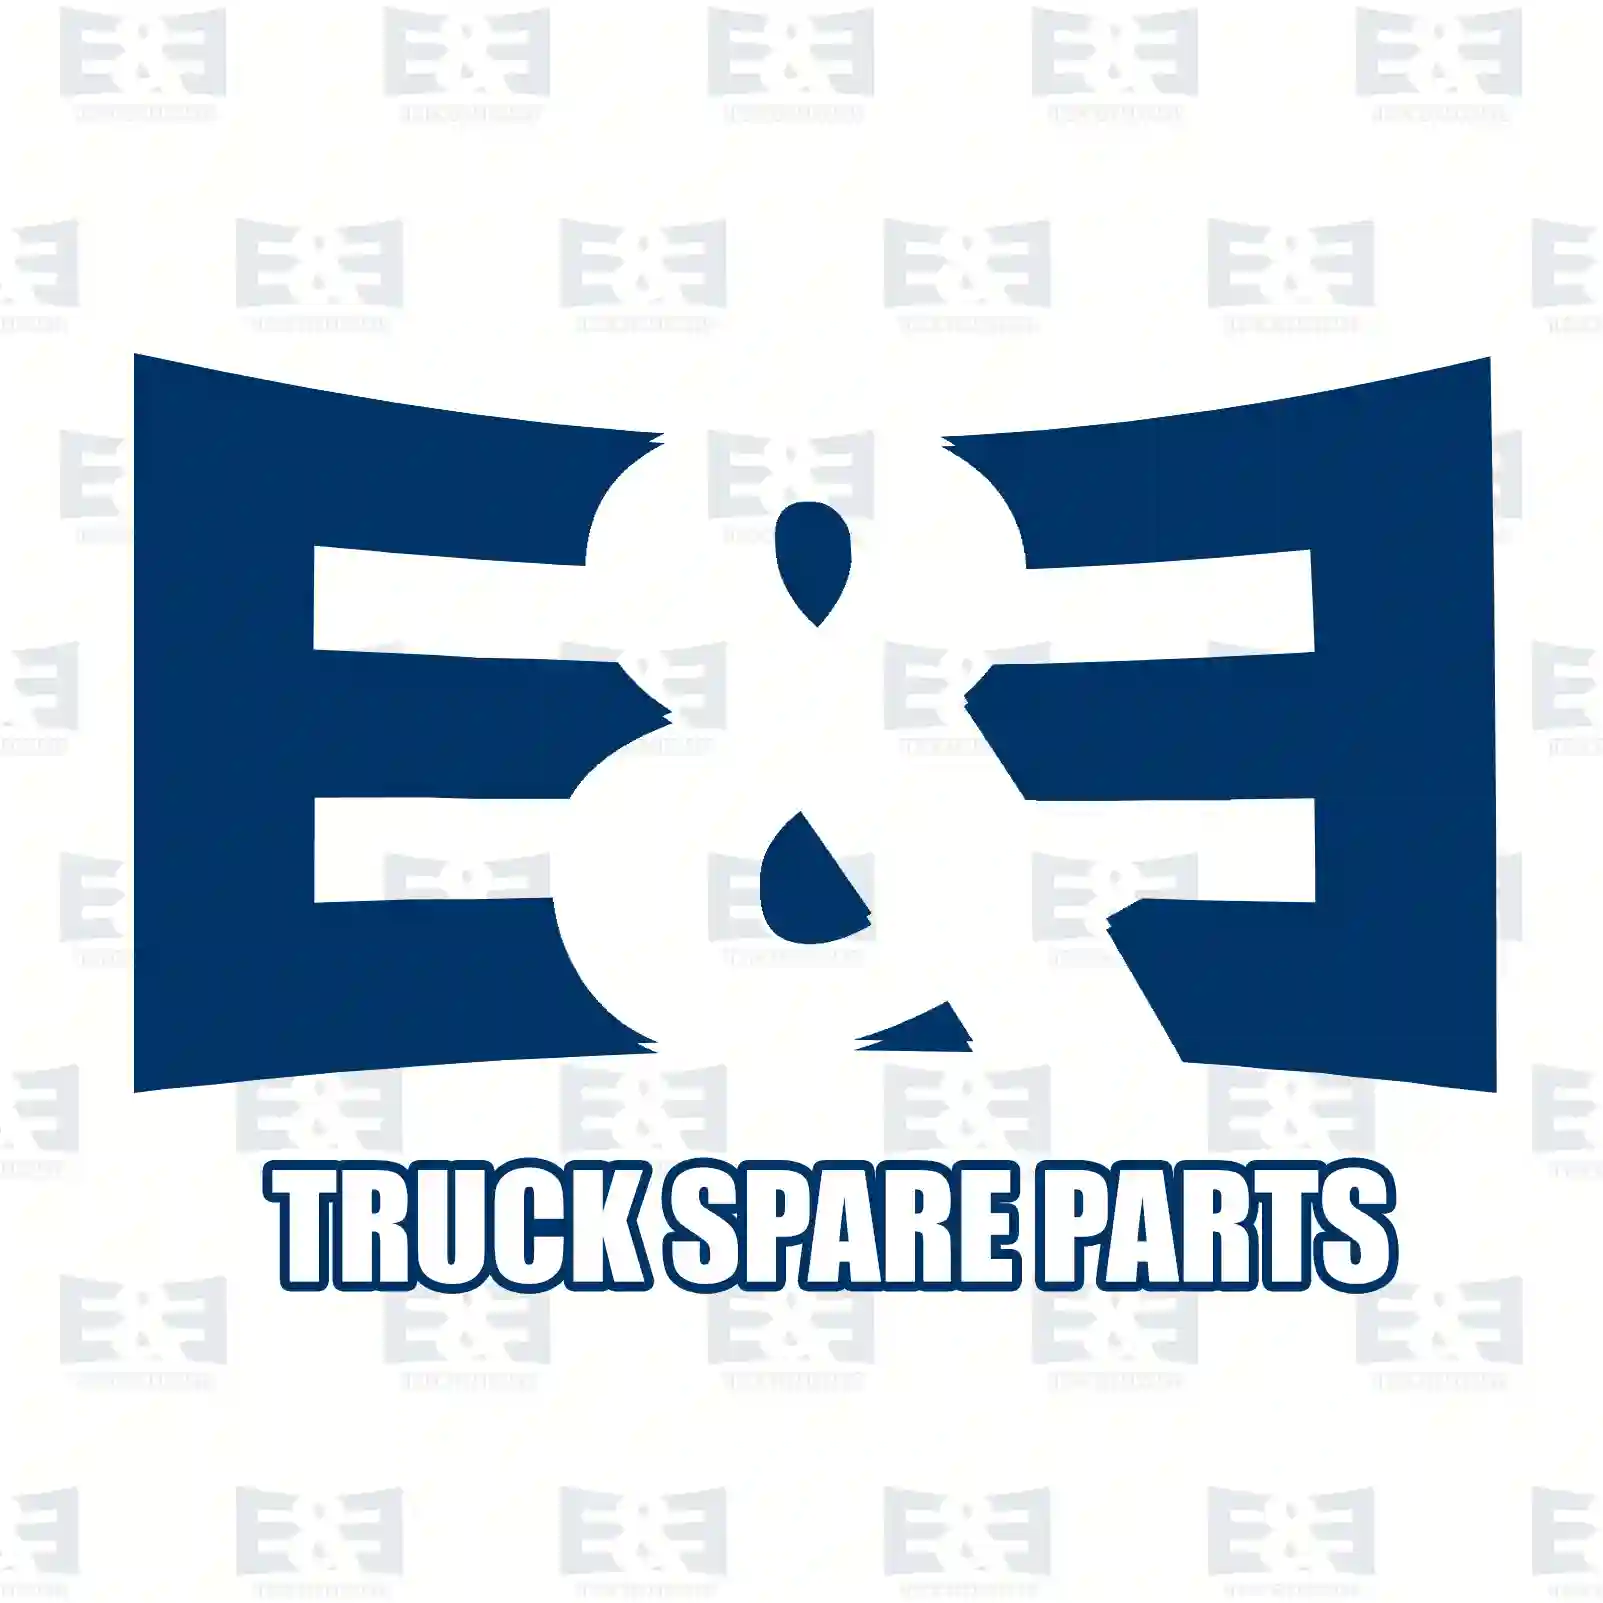 Release valve, 2E2277772, 5000673571 ||  2E2277772 E&E Truck Spare Parts | Truck Spare Parts, Auotomotive Spare Parts Release valve, 2E2277772, 5000673571 ||  2E2277772 E&E Truck Spare Parts | Truck Spare Parts, Auotomotive Spare Parts